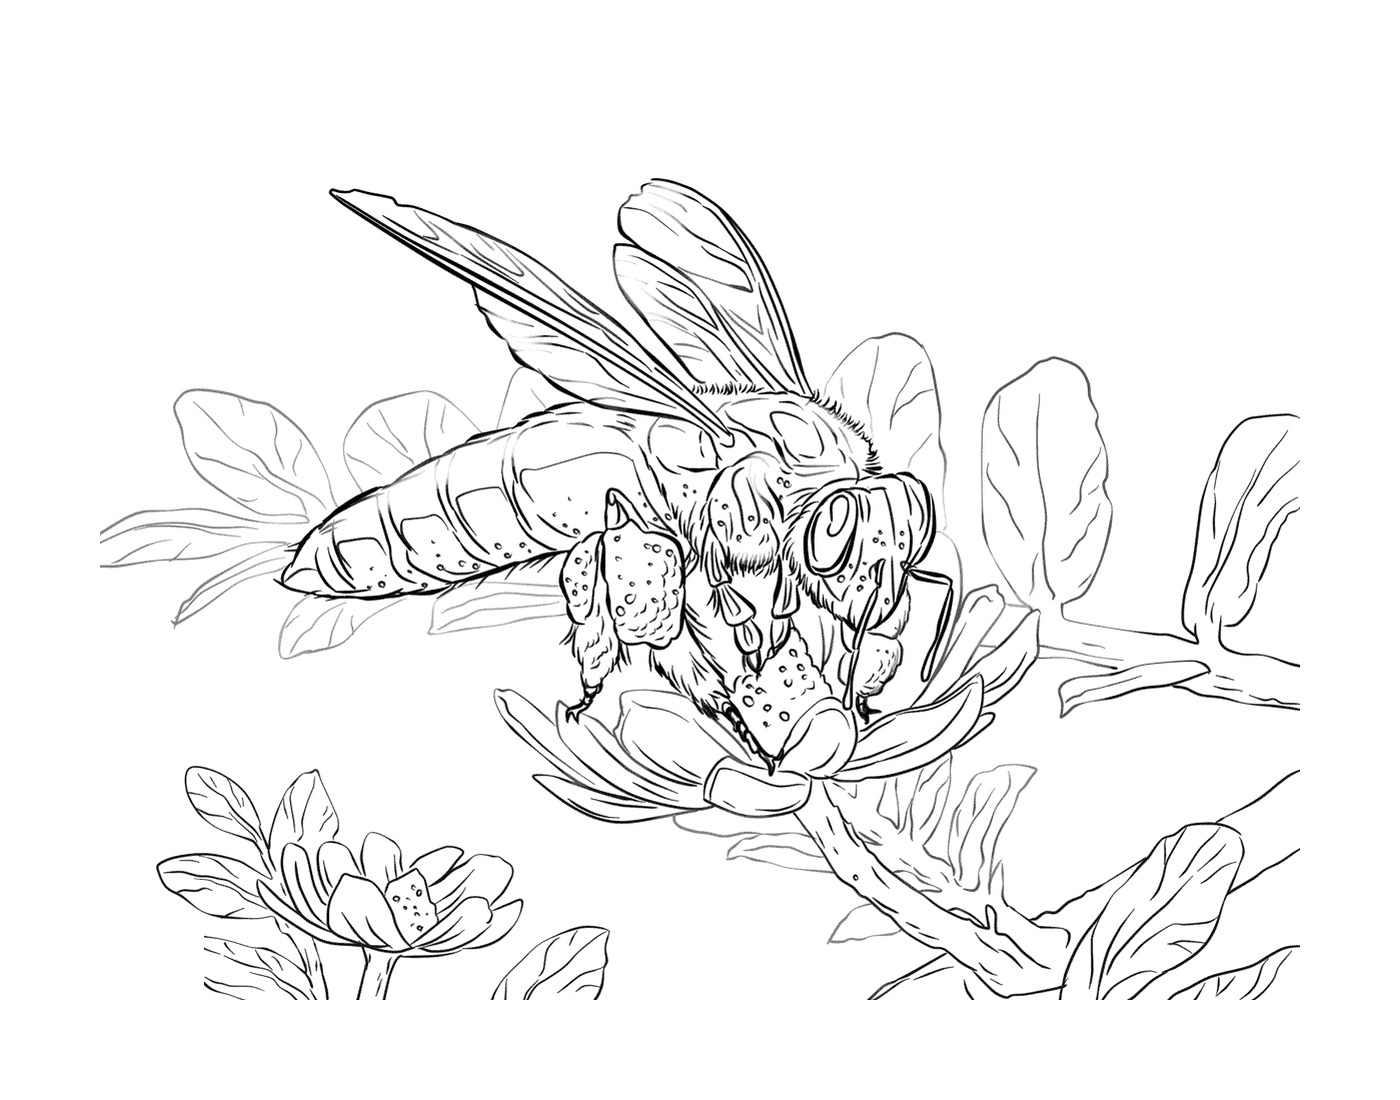  Riesenbiene in der Nähe einer Blume 